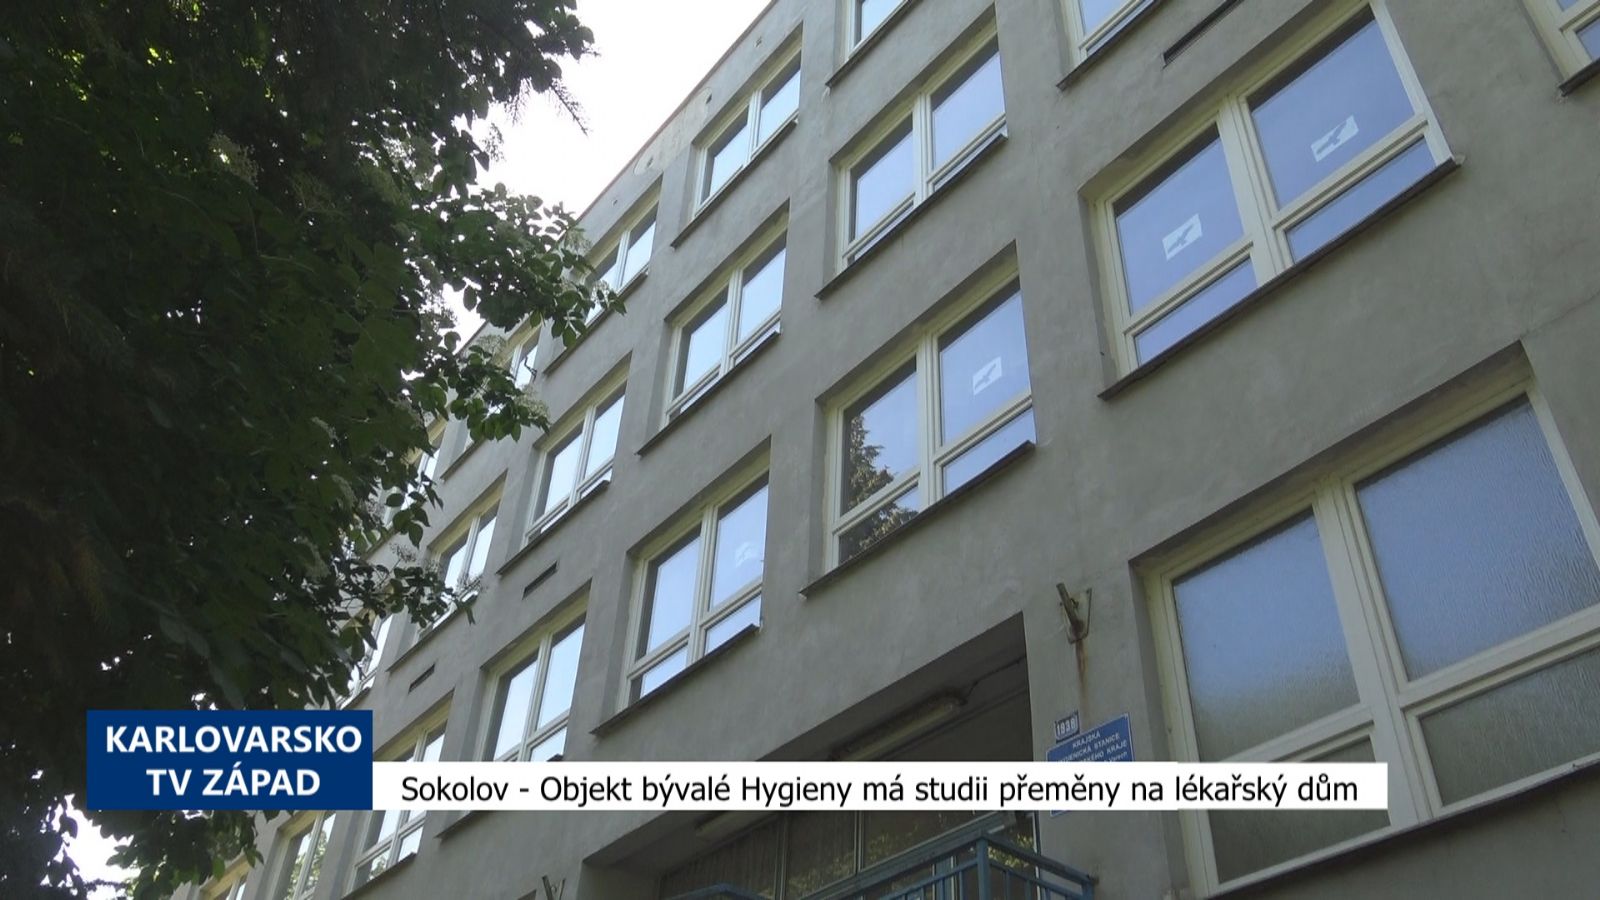 Sokolov: Objekt bývalé Hygieny má studii přeměny na lékařský dům (TV Západ)